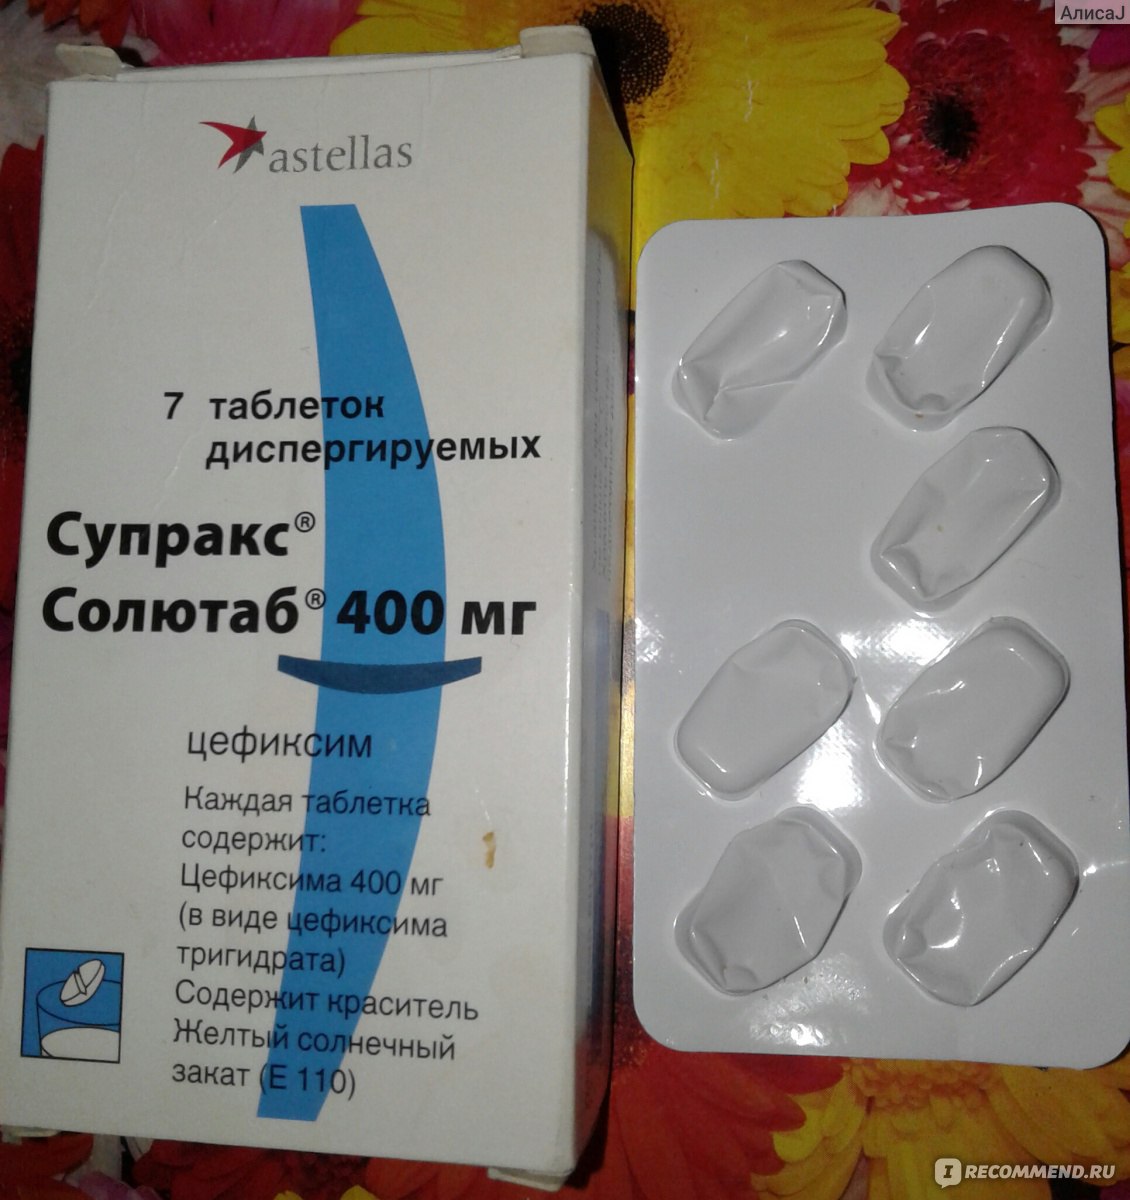 Антибиотик Супракс солютаб, 400 мг - «Вылечил цистит, но дал сердечный .